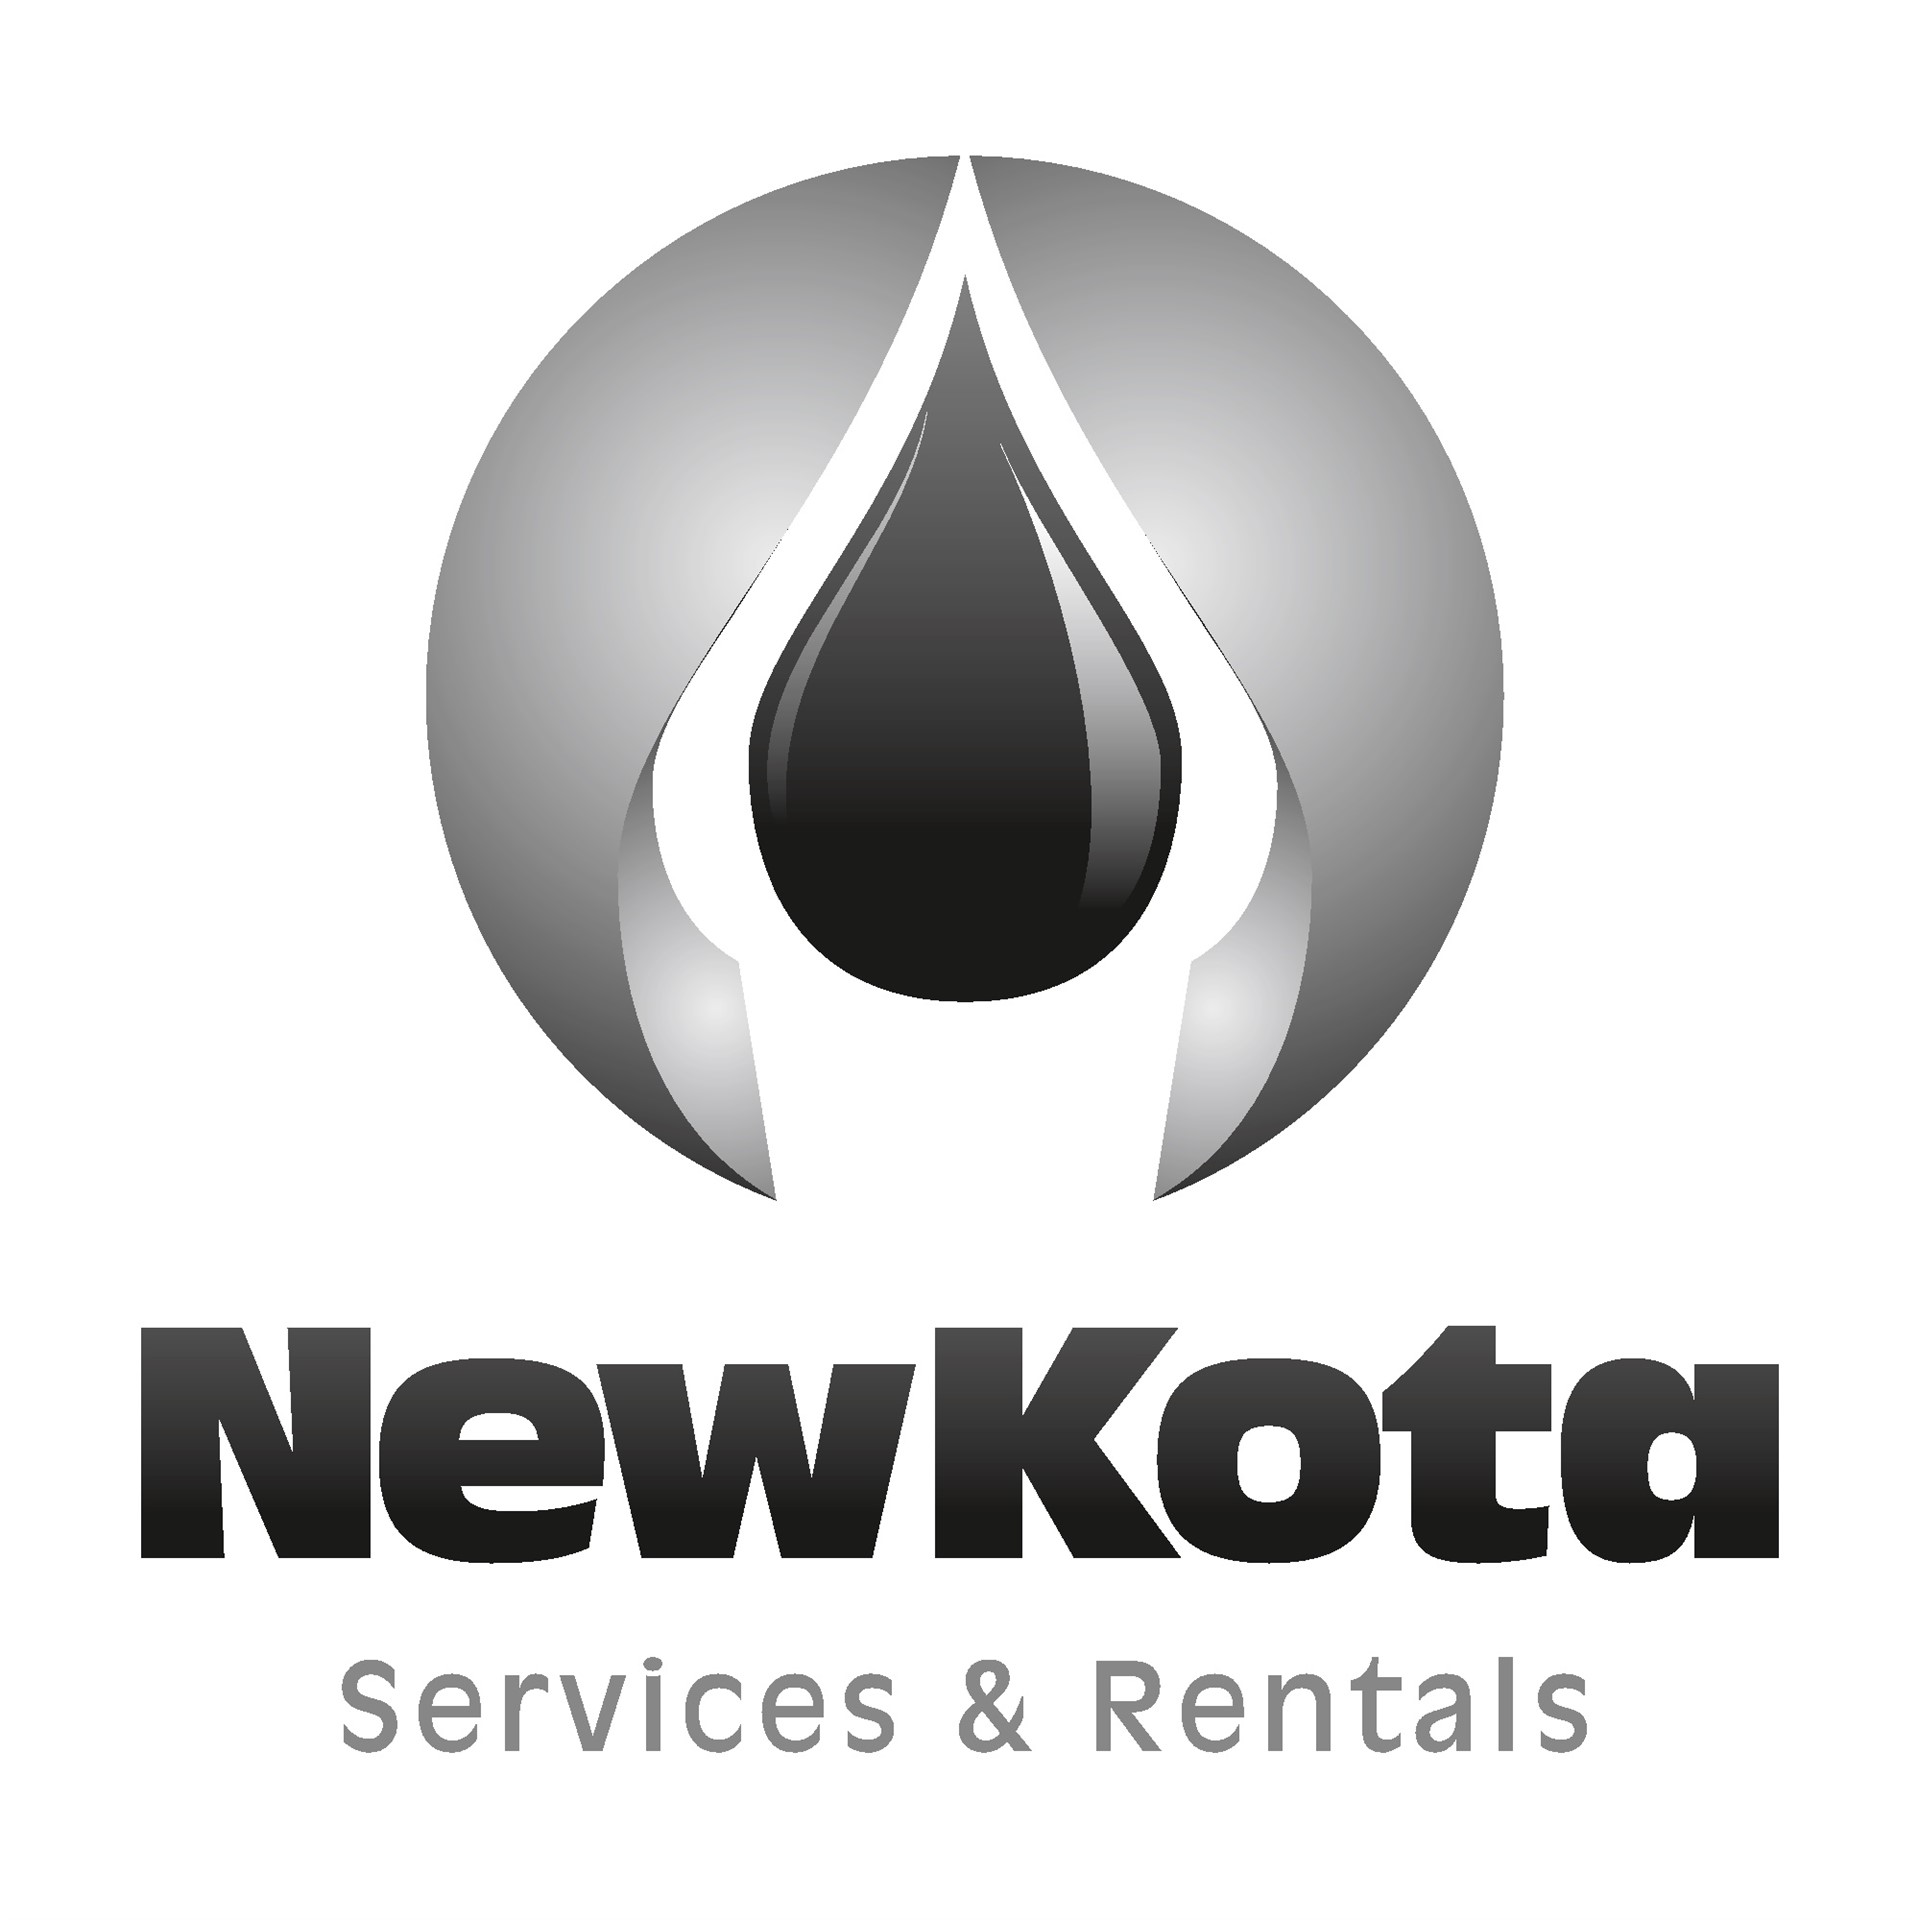 Newkota Services & Rentals